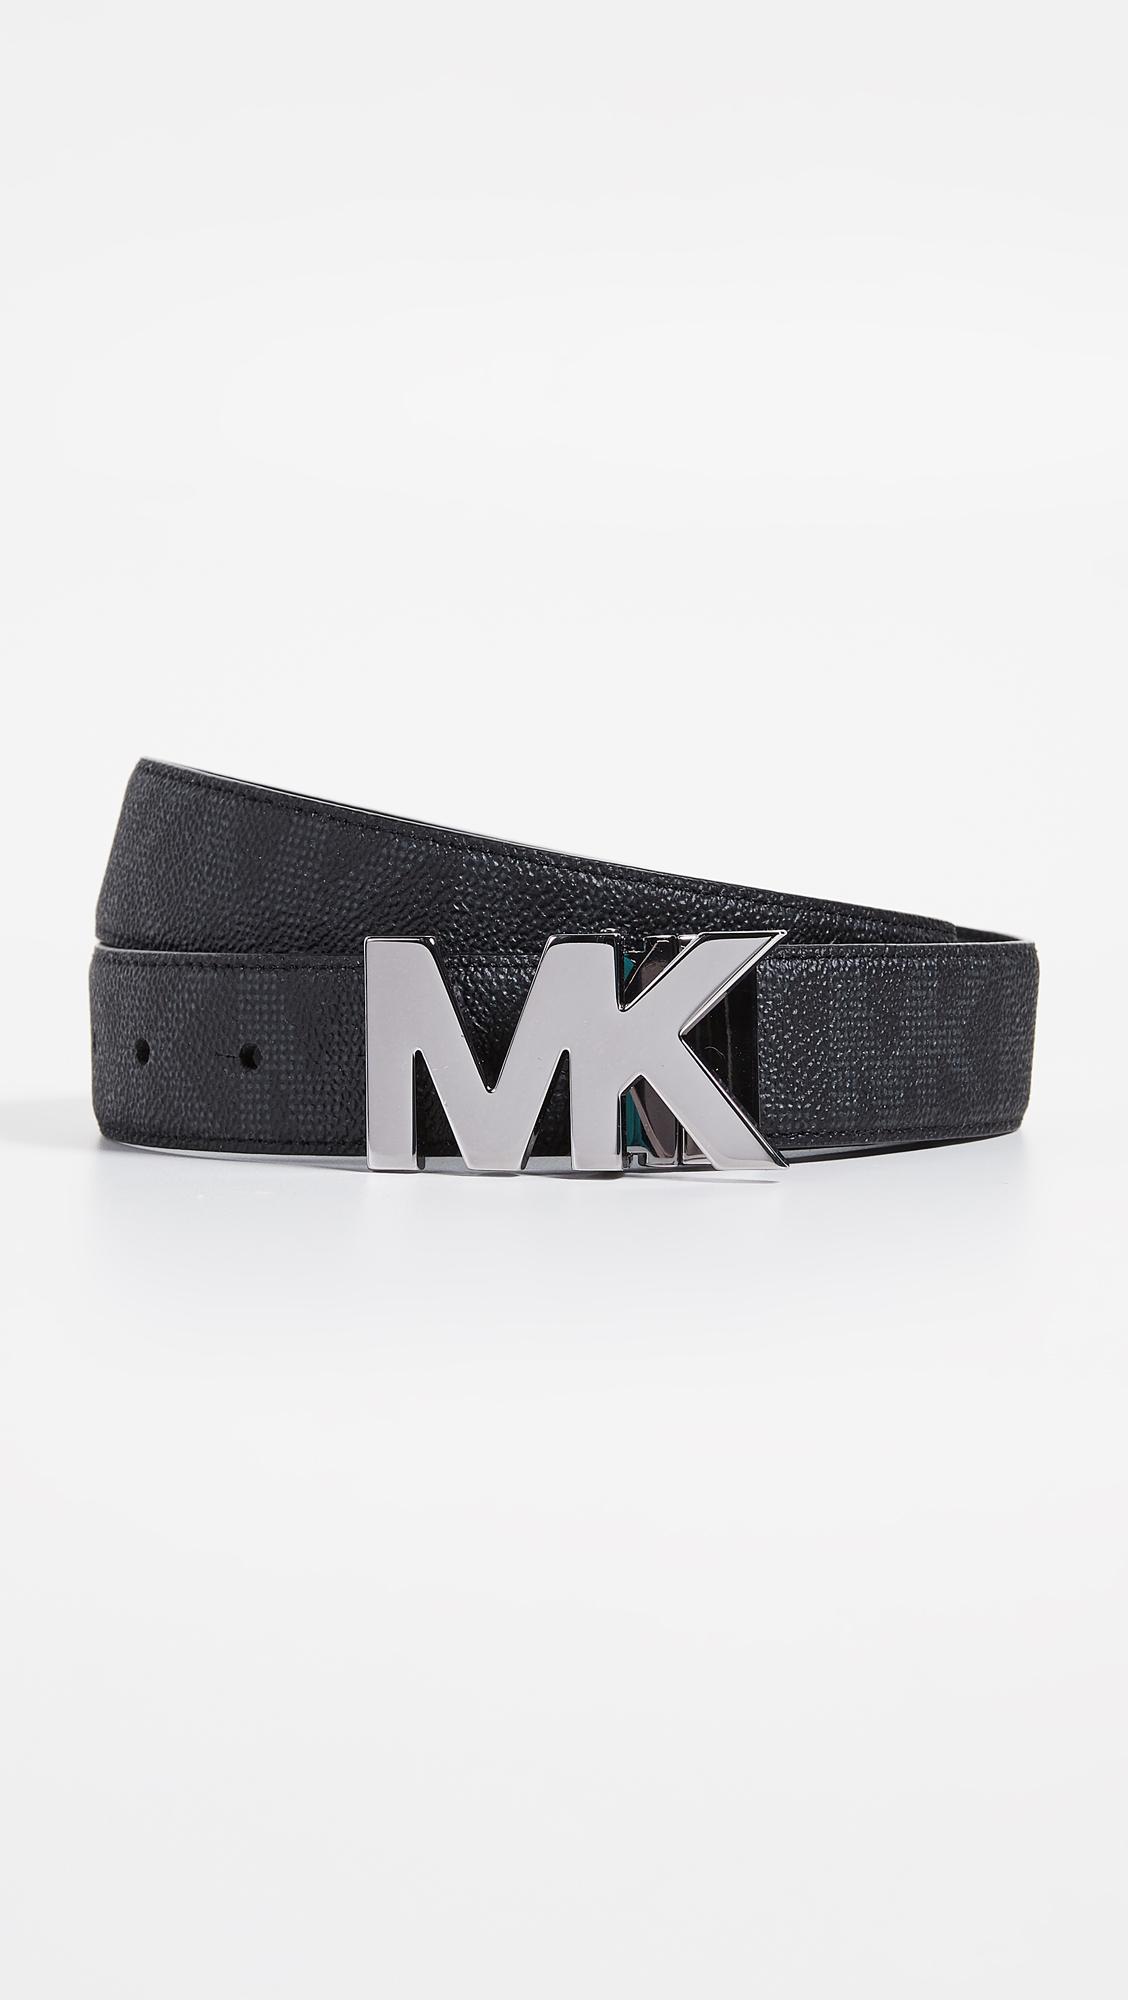 Michael Kors Leather Reversible Mk Hardware Belt in Black for Men - Lyst